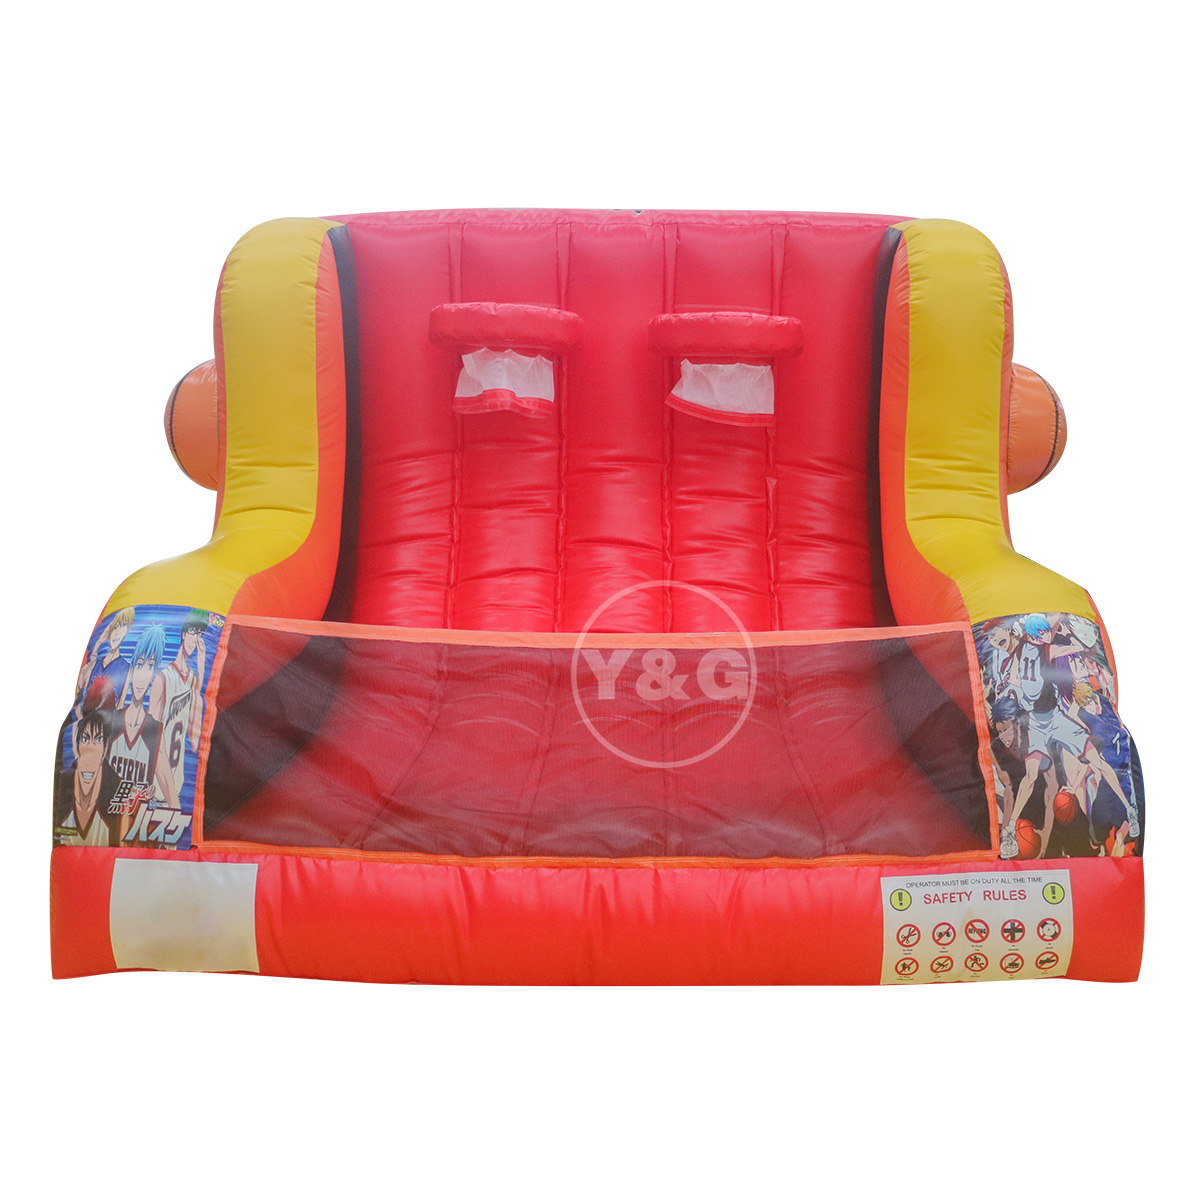 inflatable basketball hoopYGG96